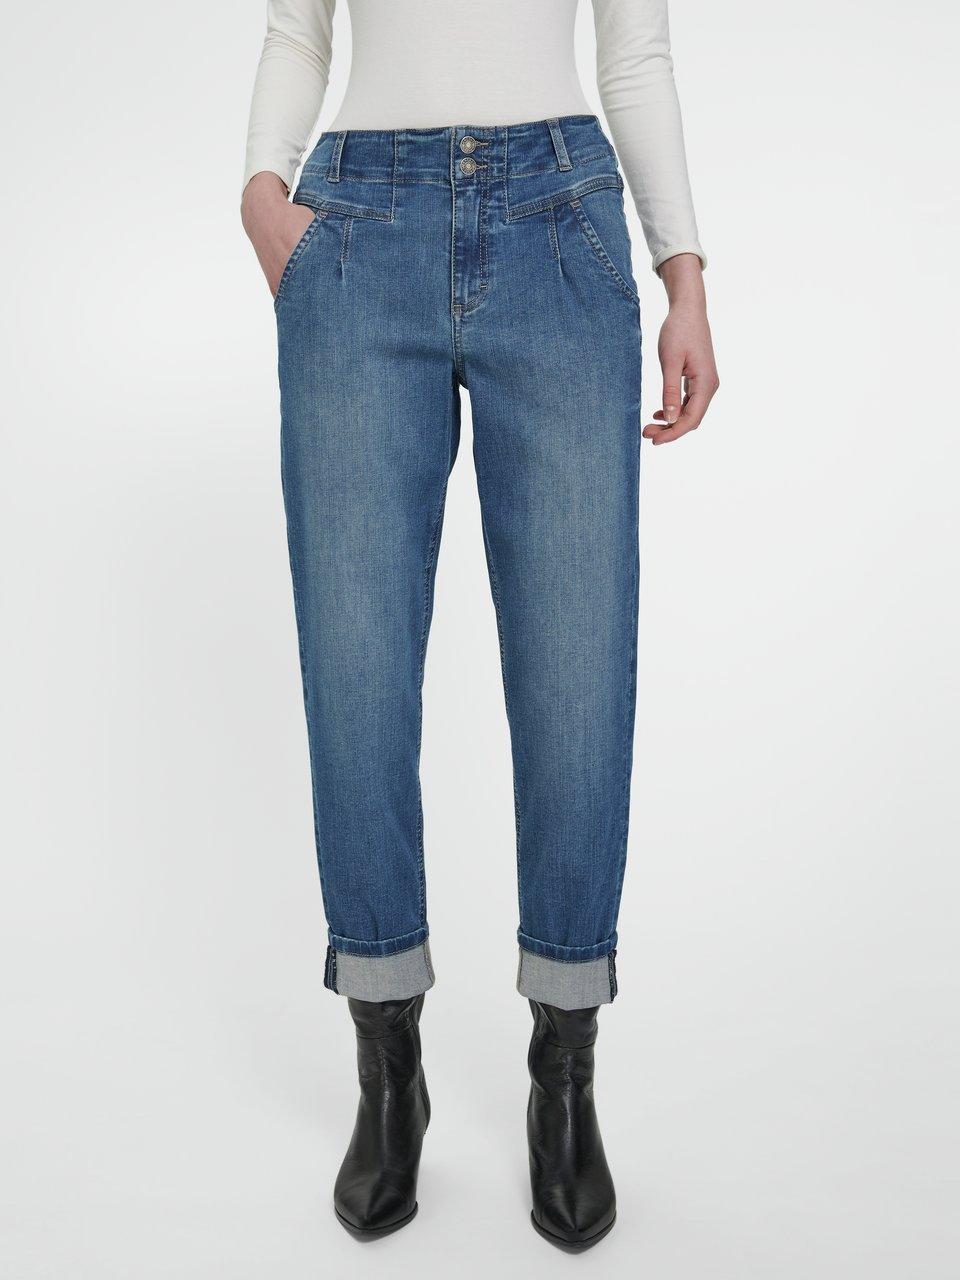 Exklusive Markenmode von ANGELS finden Sie hier im PETER HAHN Online-Shop | Slim-Fit Jeans